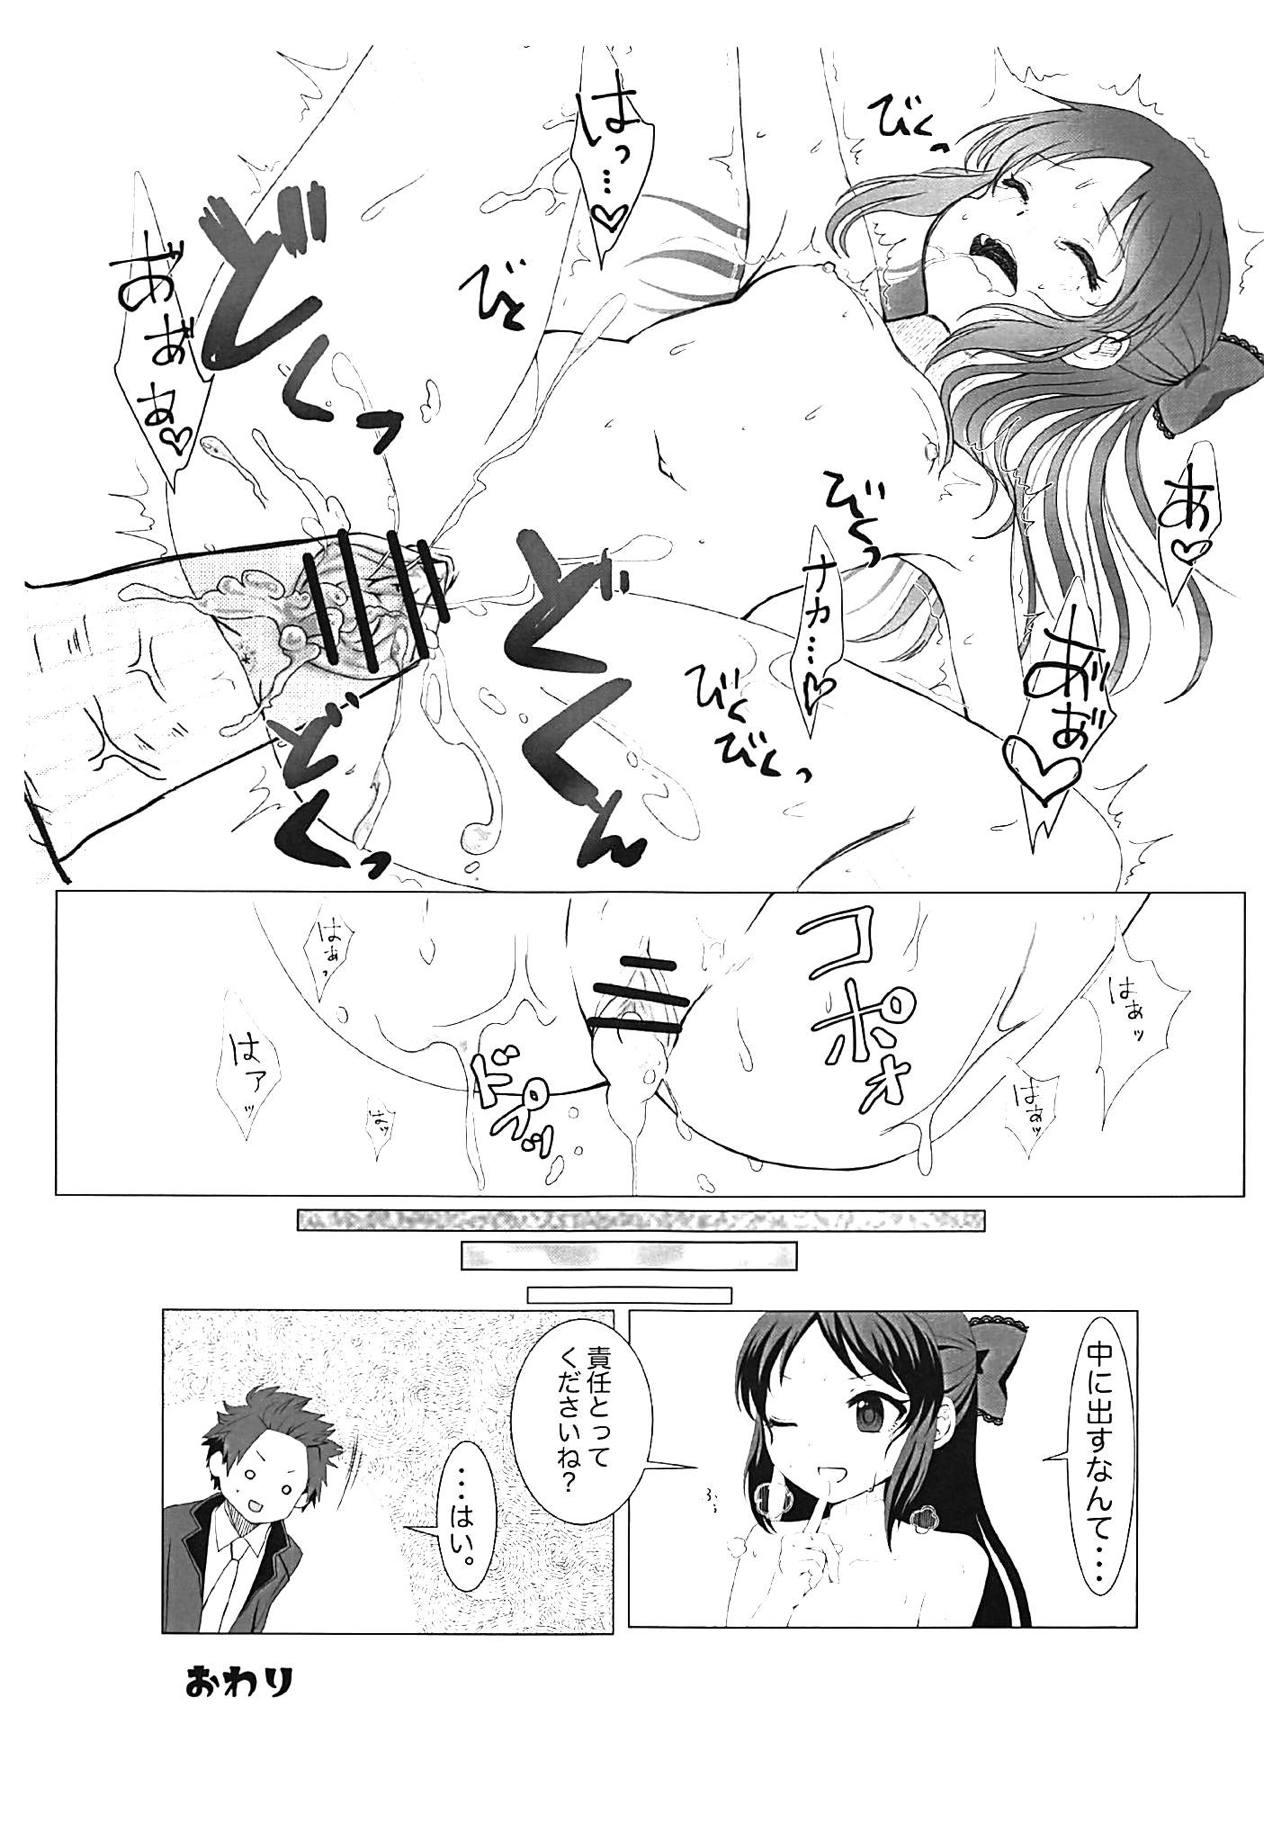 Massive Tachibana Arisu no Himitsu - The idolmaster Cutie - Page 12